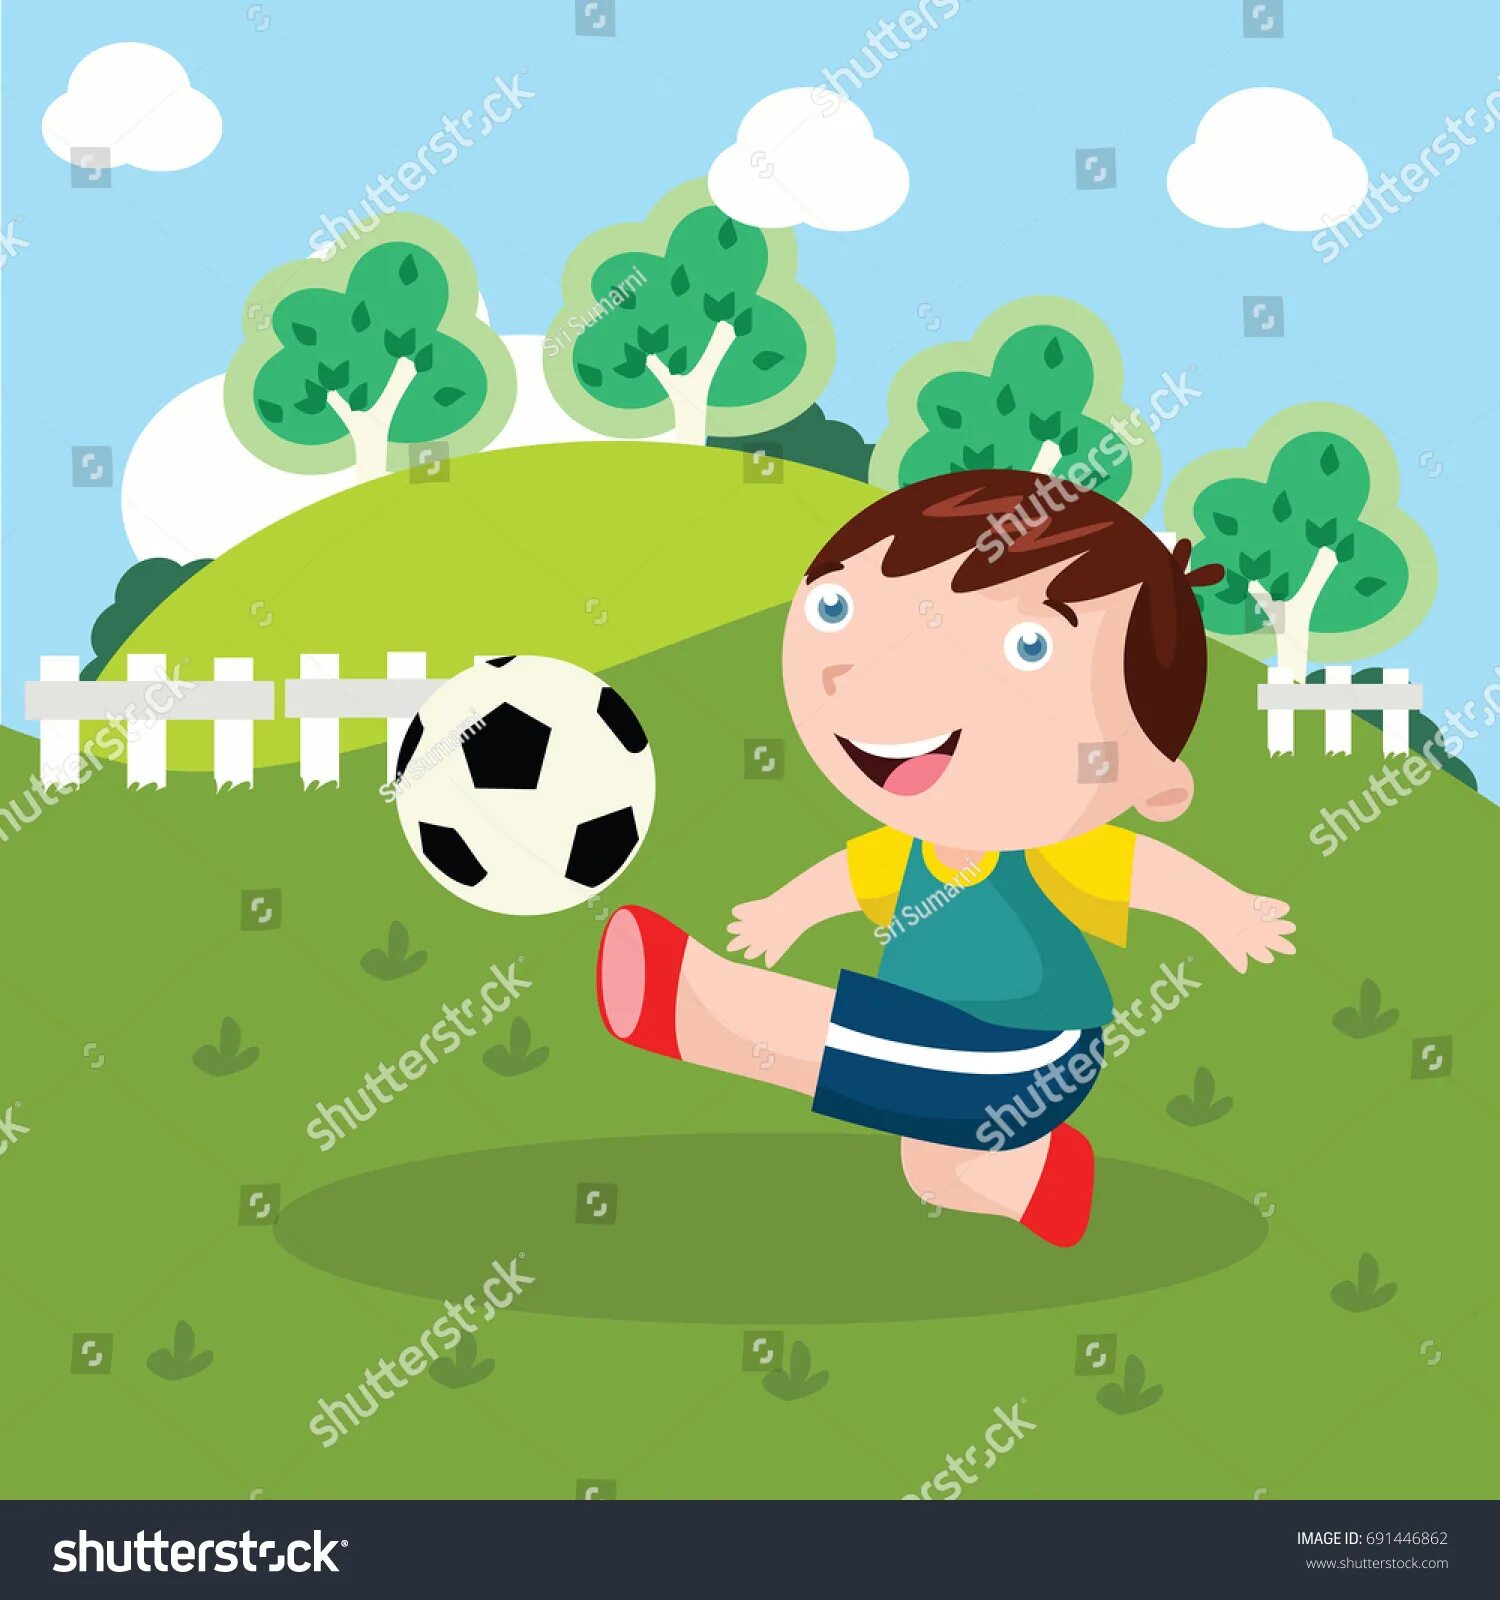 Футбол мультяшный. Играющие в футбол дети иллюстрация. Футбол картины для детей. Игра в футбол мультяшная. I can playing football